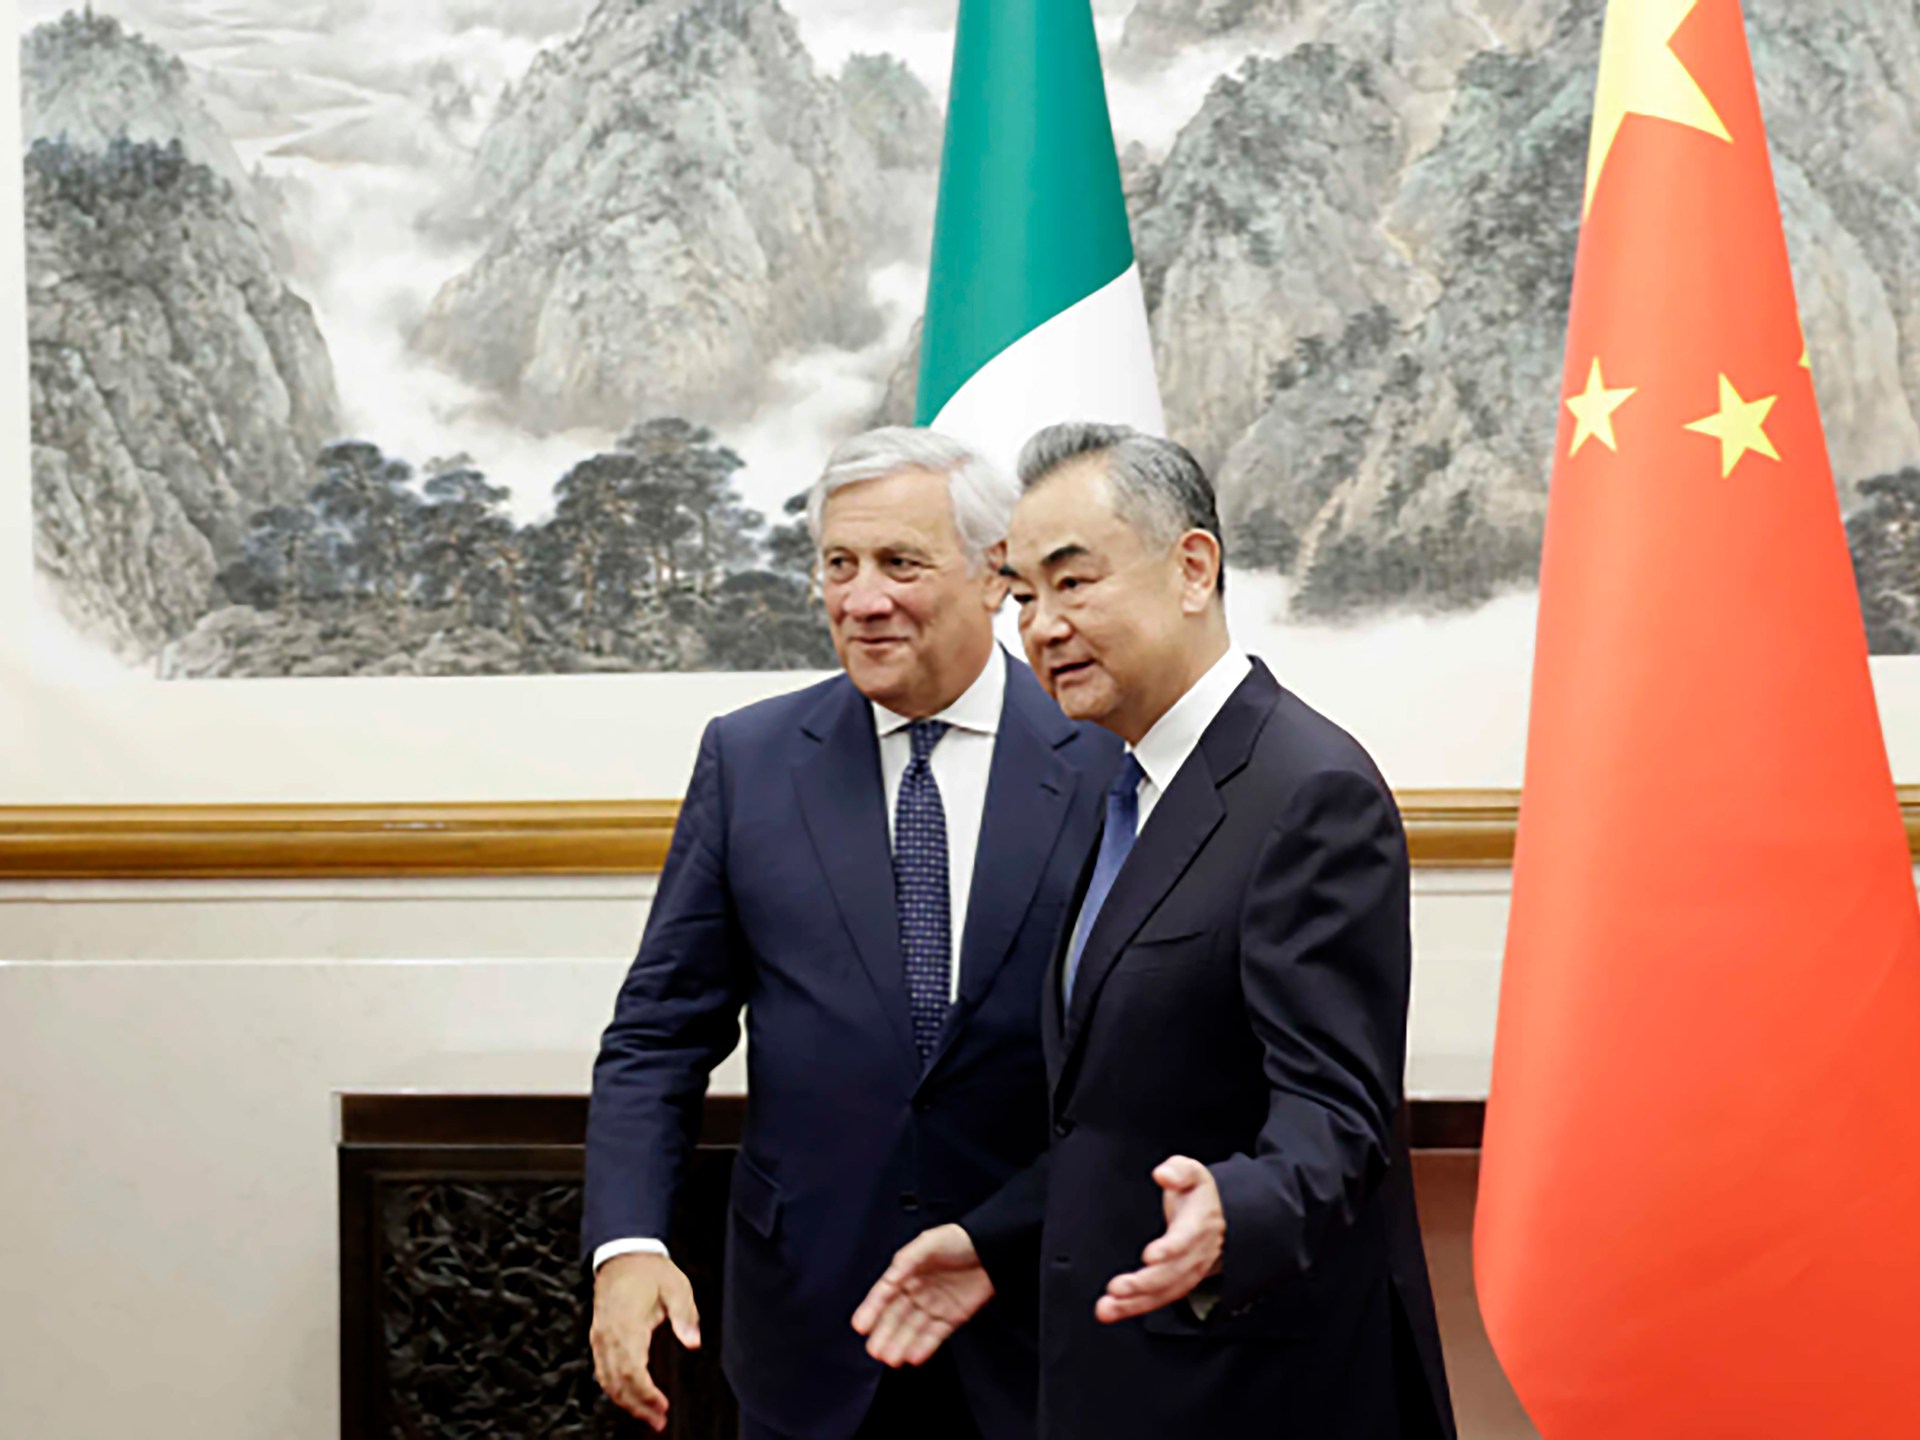 La Cina promuove l’iniziativa “Belt and Road” con l’Italia tra il crescente scetticismo a Roma |  infrastruttura